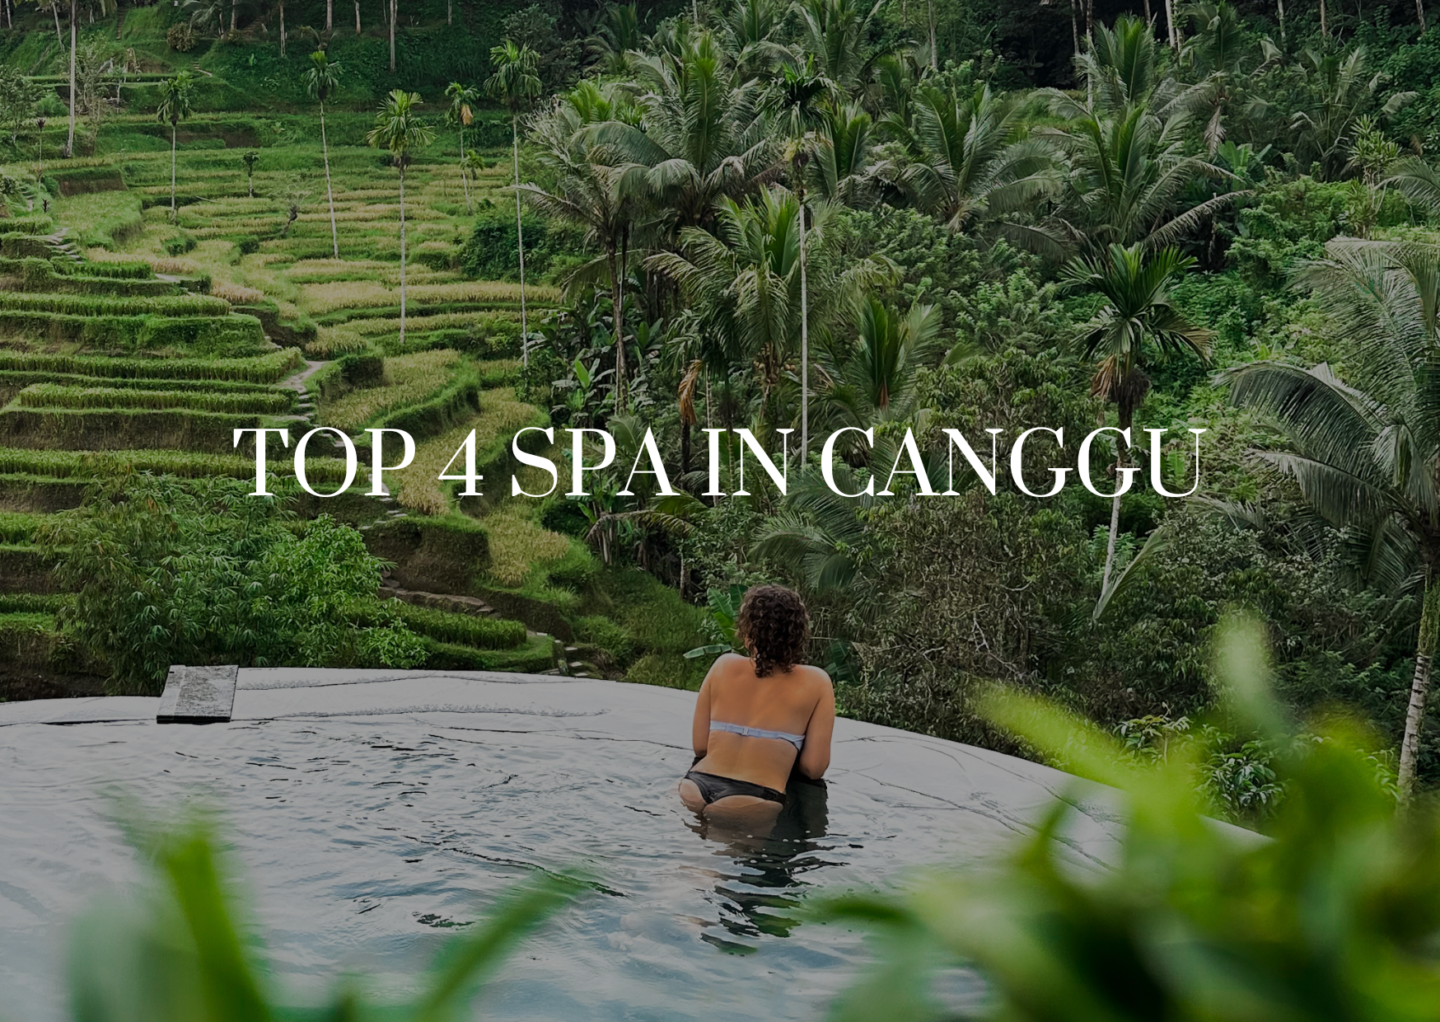 Top 4 Spa in Canggu